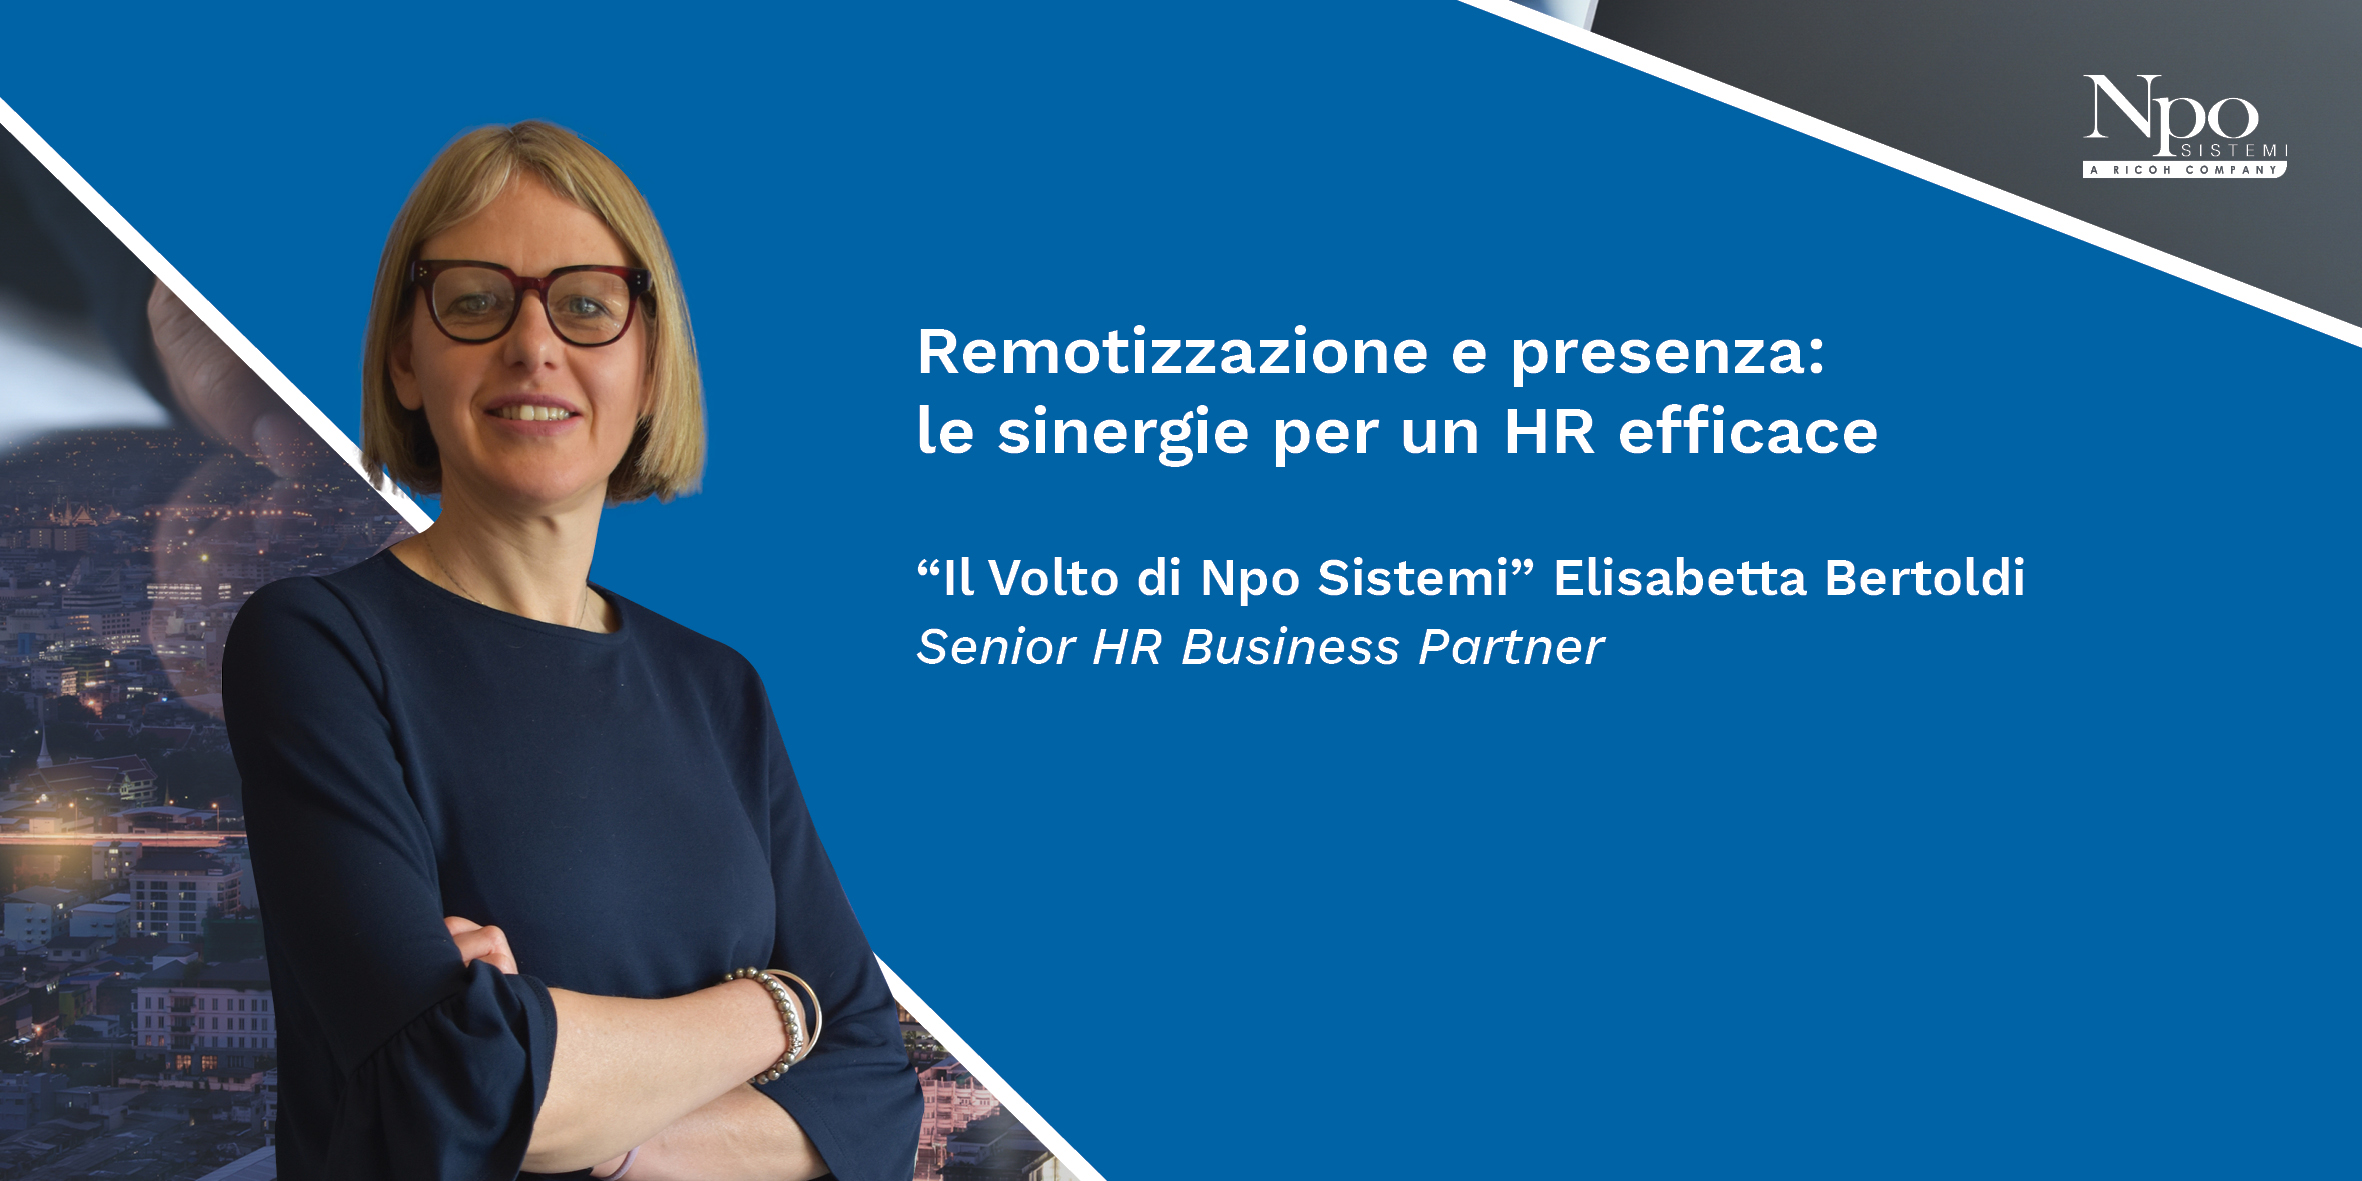 Remotizzazione e presenza: le sinergie per un HR efficace. Elisabetta Bertoldi, Il volto di Npo.